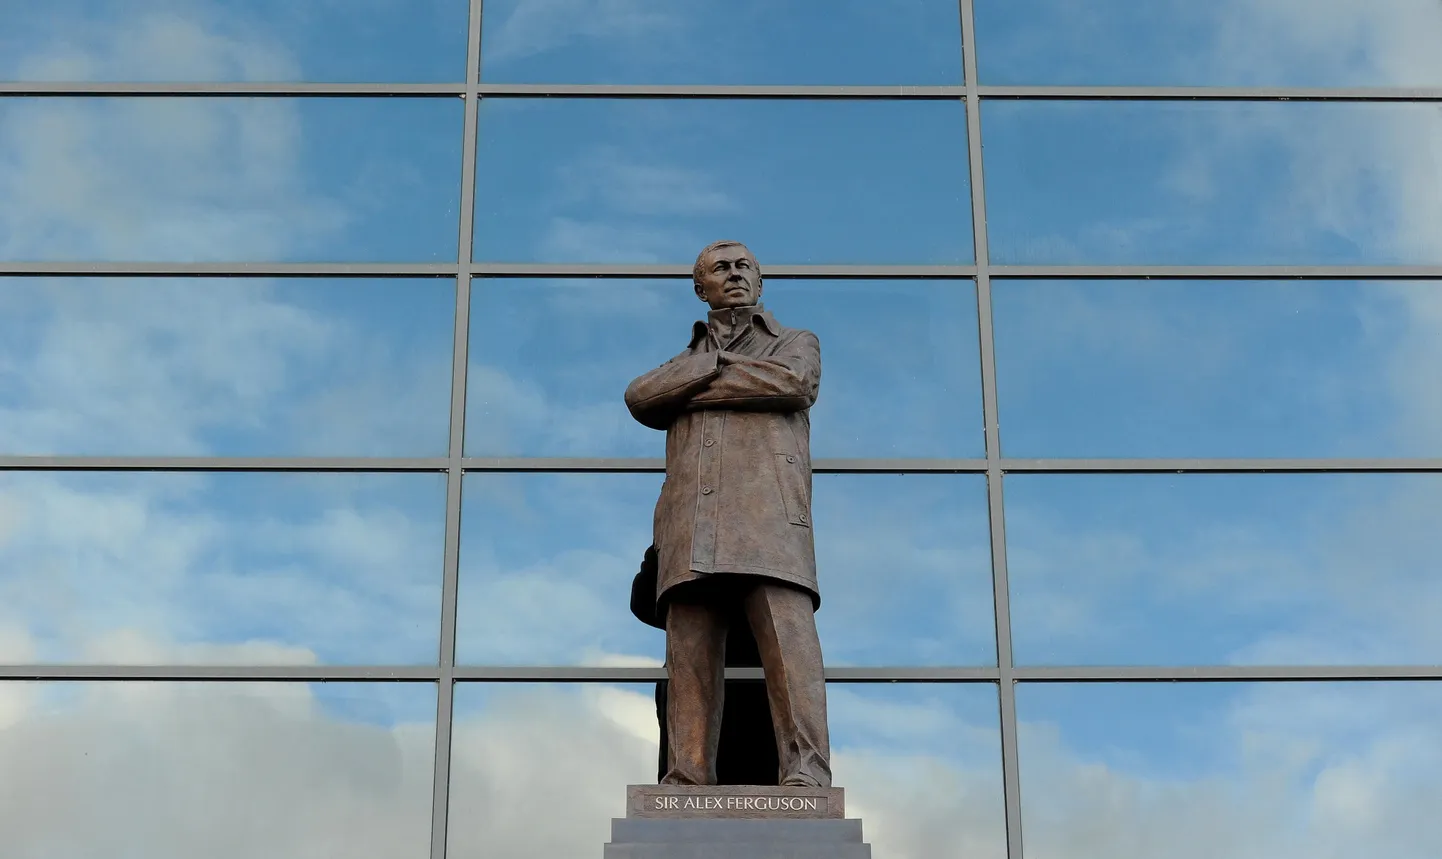 Статуя Фергюсона у стадиона Trafford Stadium была открыта в Манчестере в ноябре 2012 года.